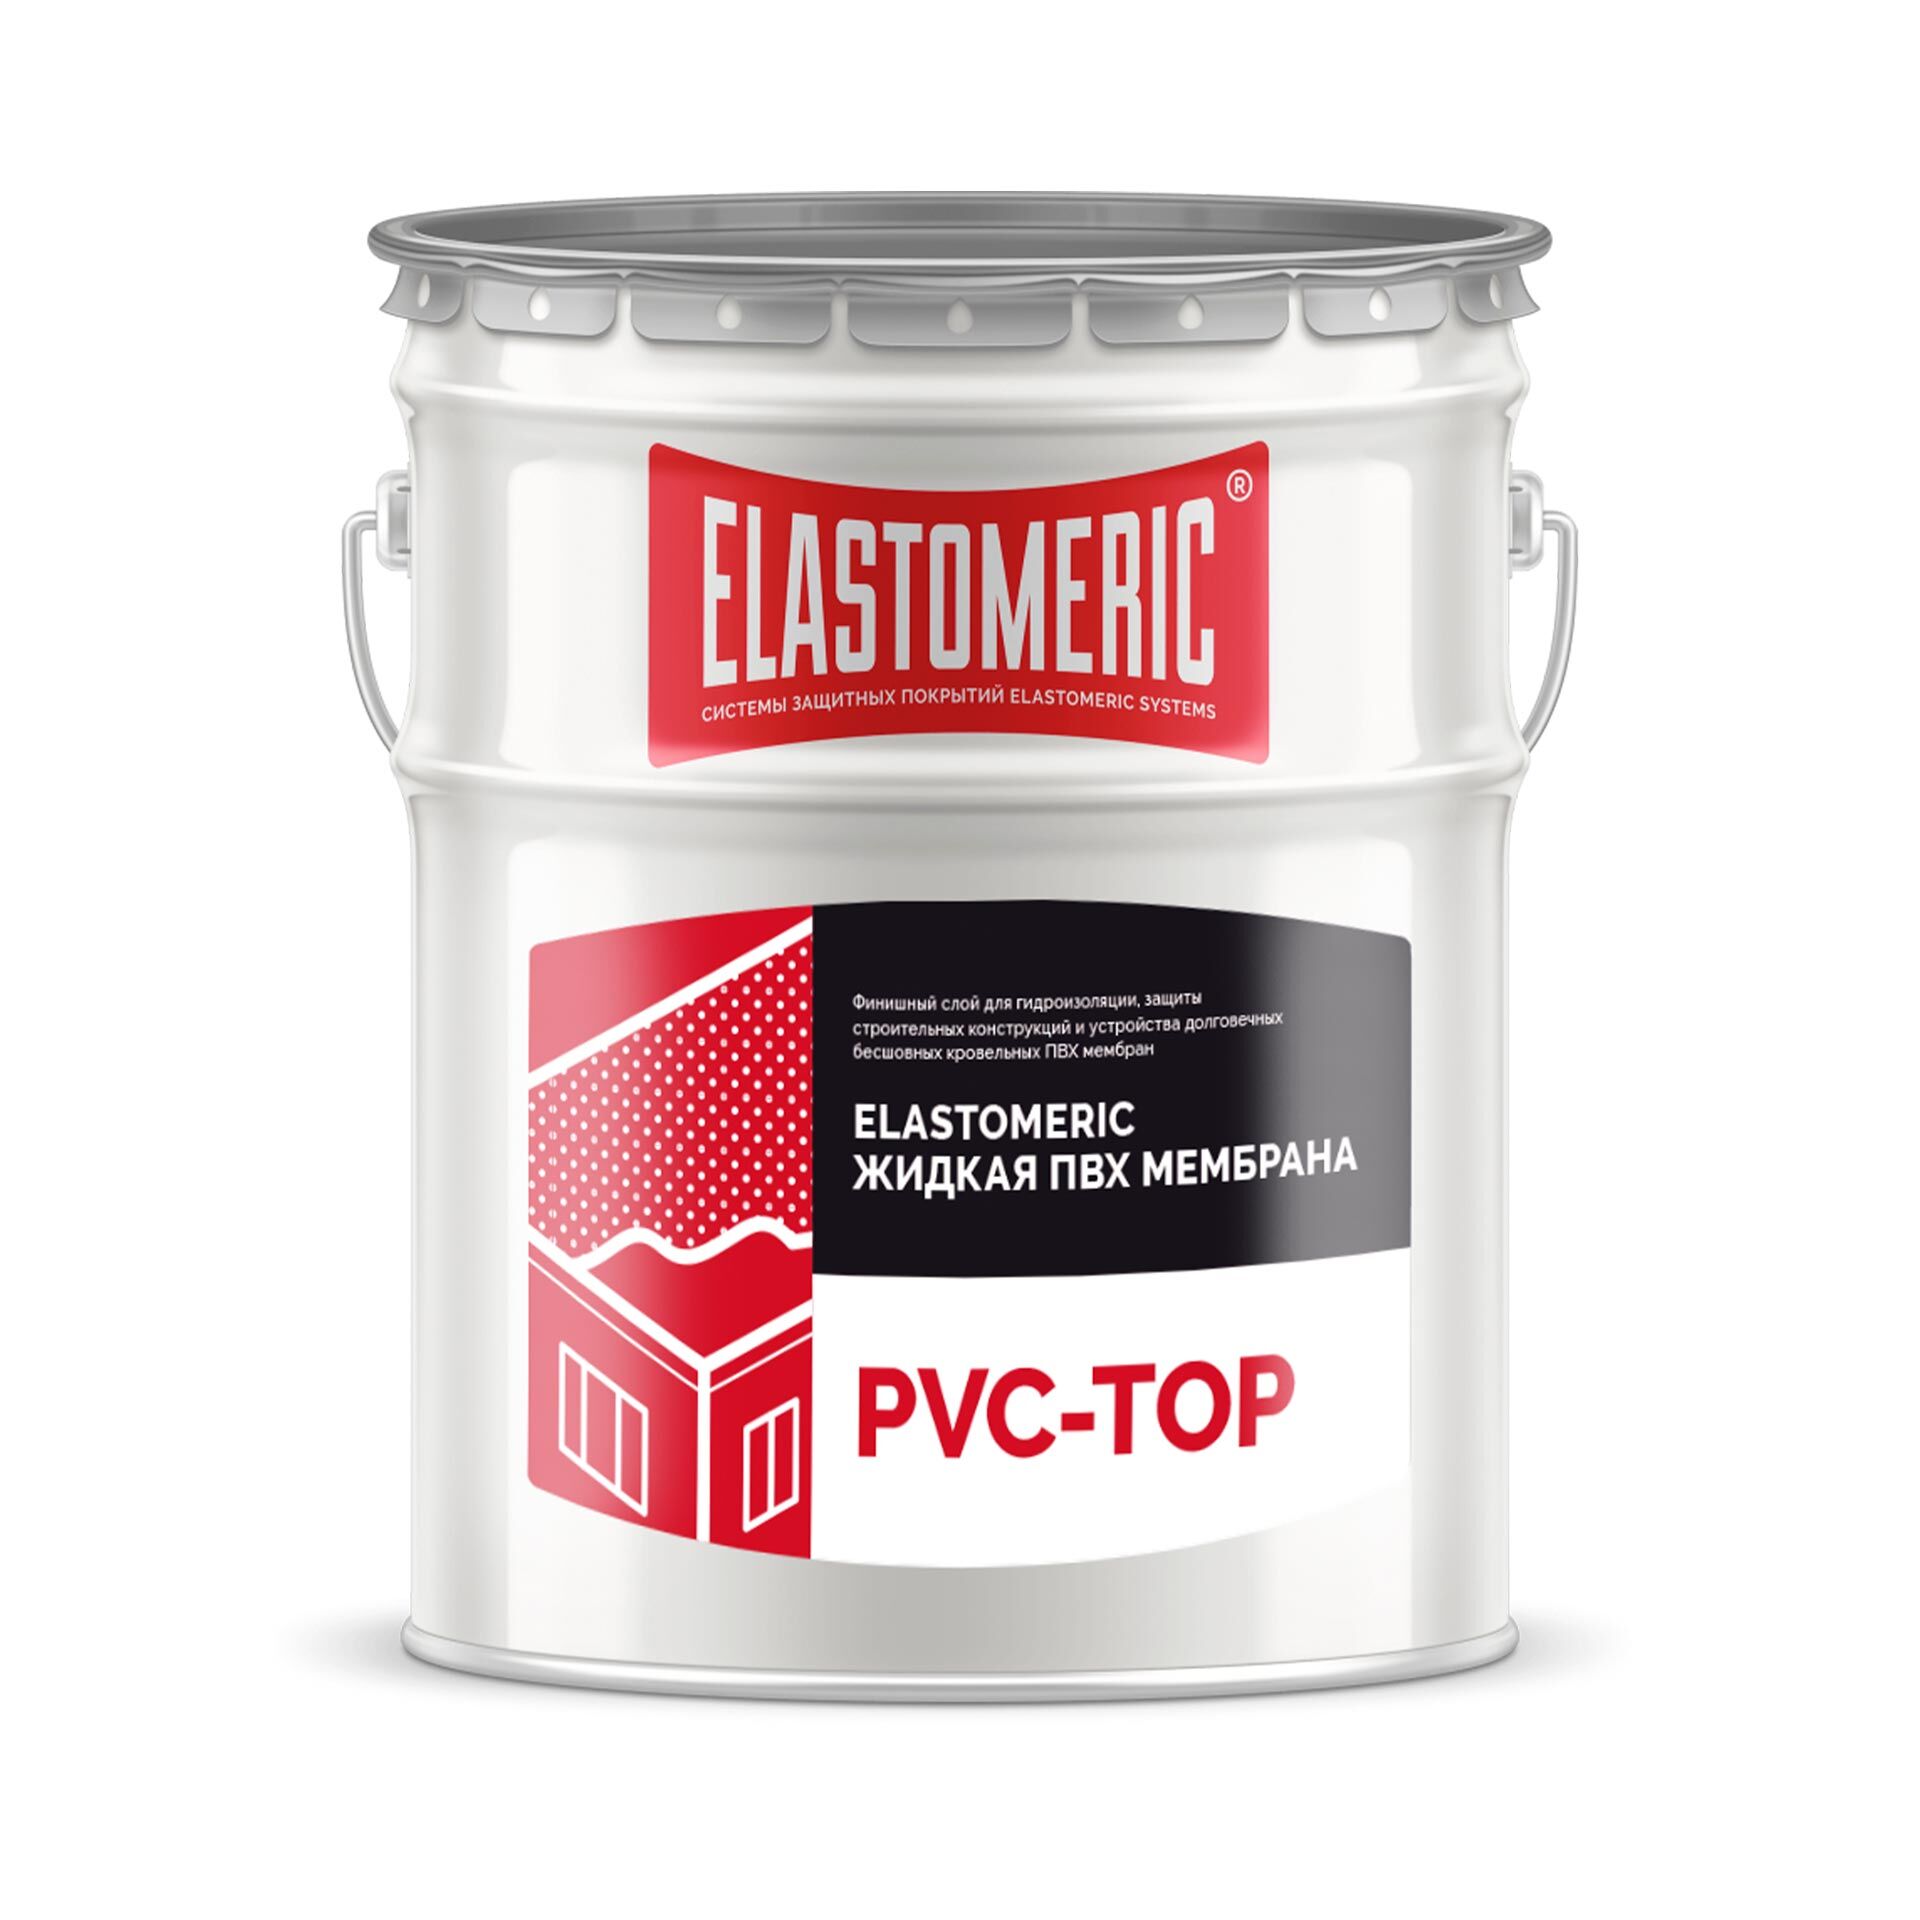 Жидкая ПВХ мембрана - Elastomeric PVC TOP (финишный слой) 20 кг